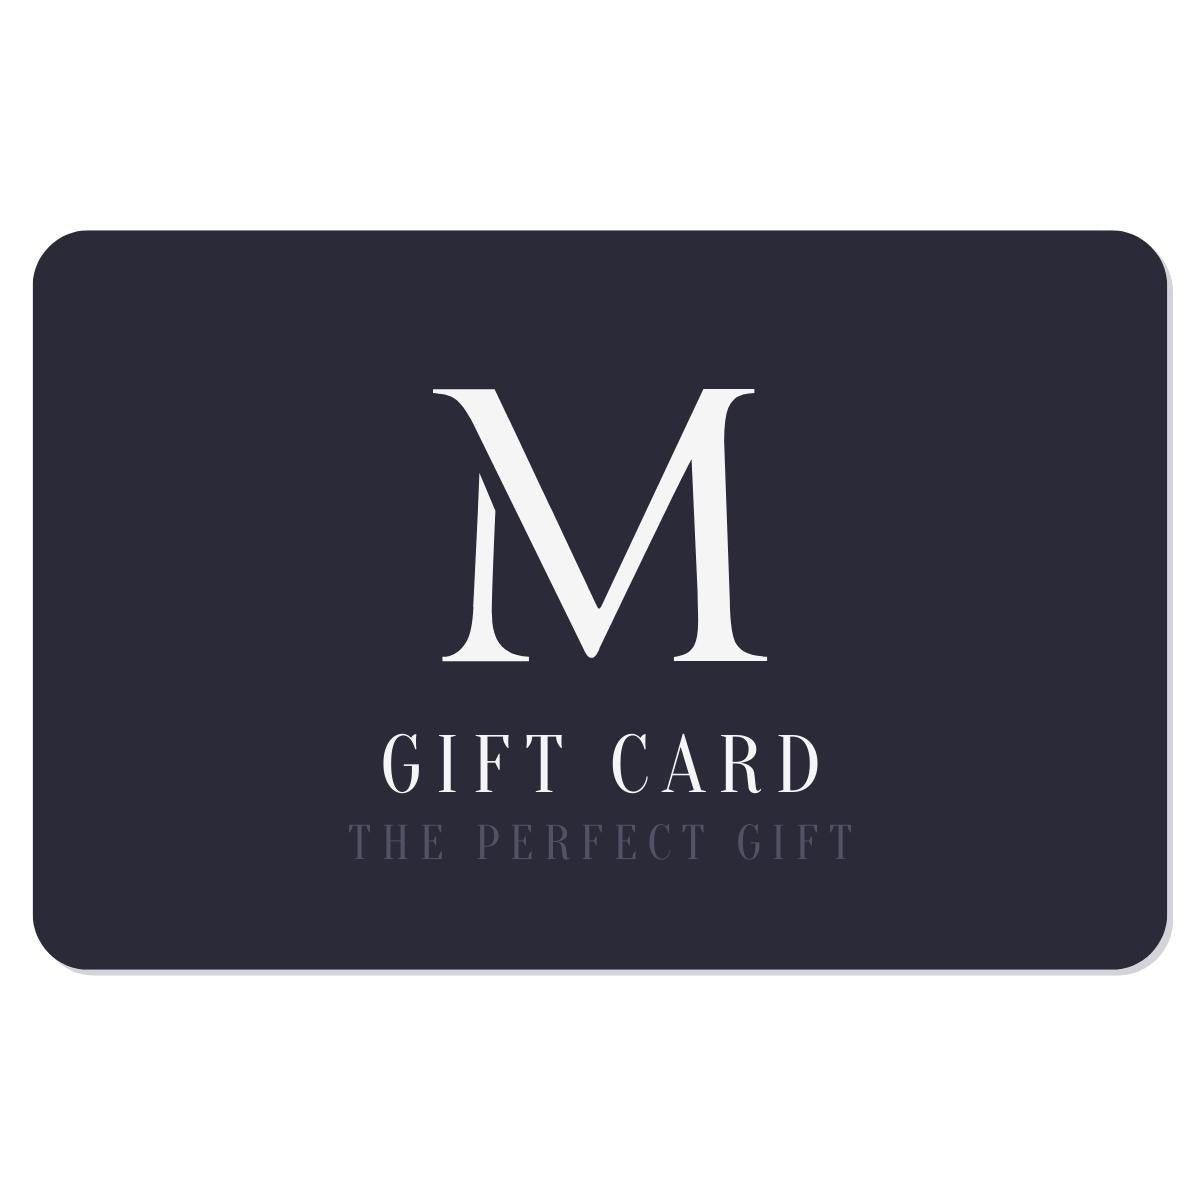 Millies Gift Card - Digital Voucher